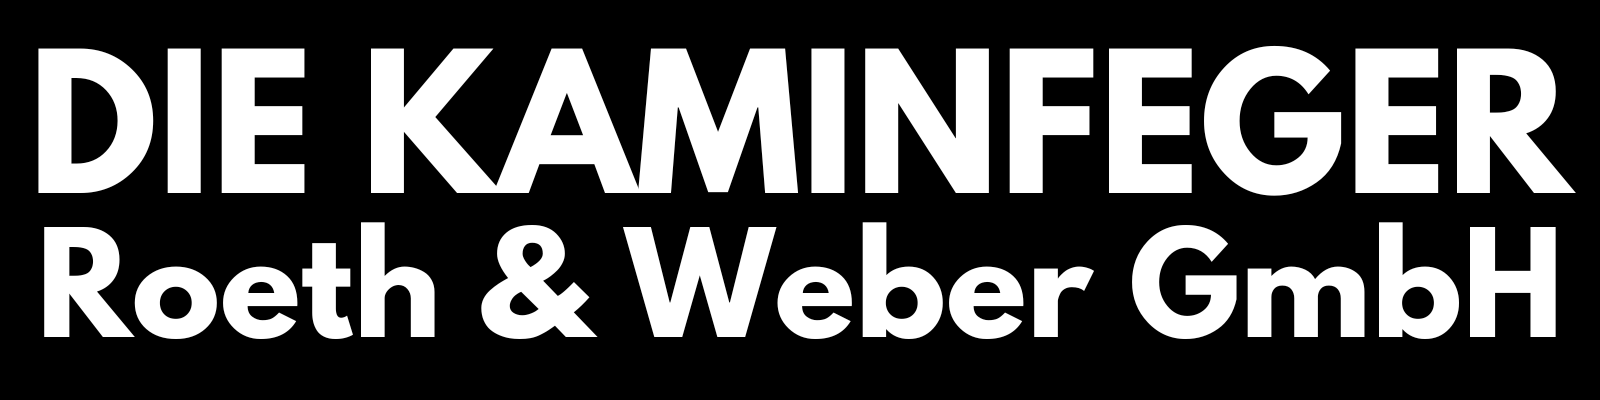 Die Kaminfeger Roeth & Weber GmbH, Logo mit Schriftzug